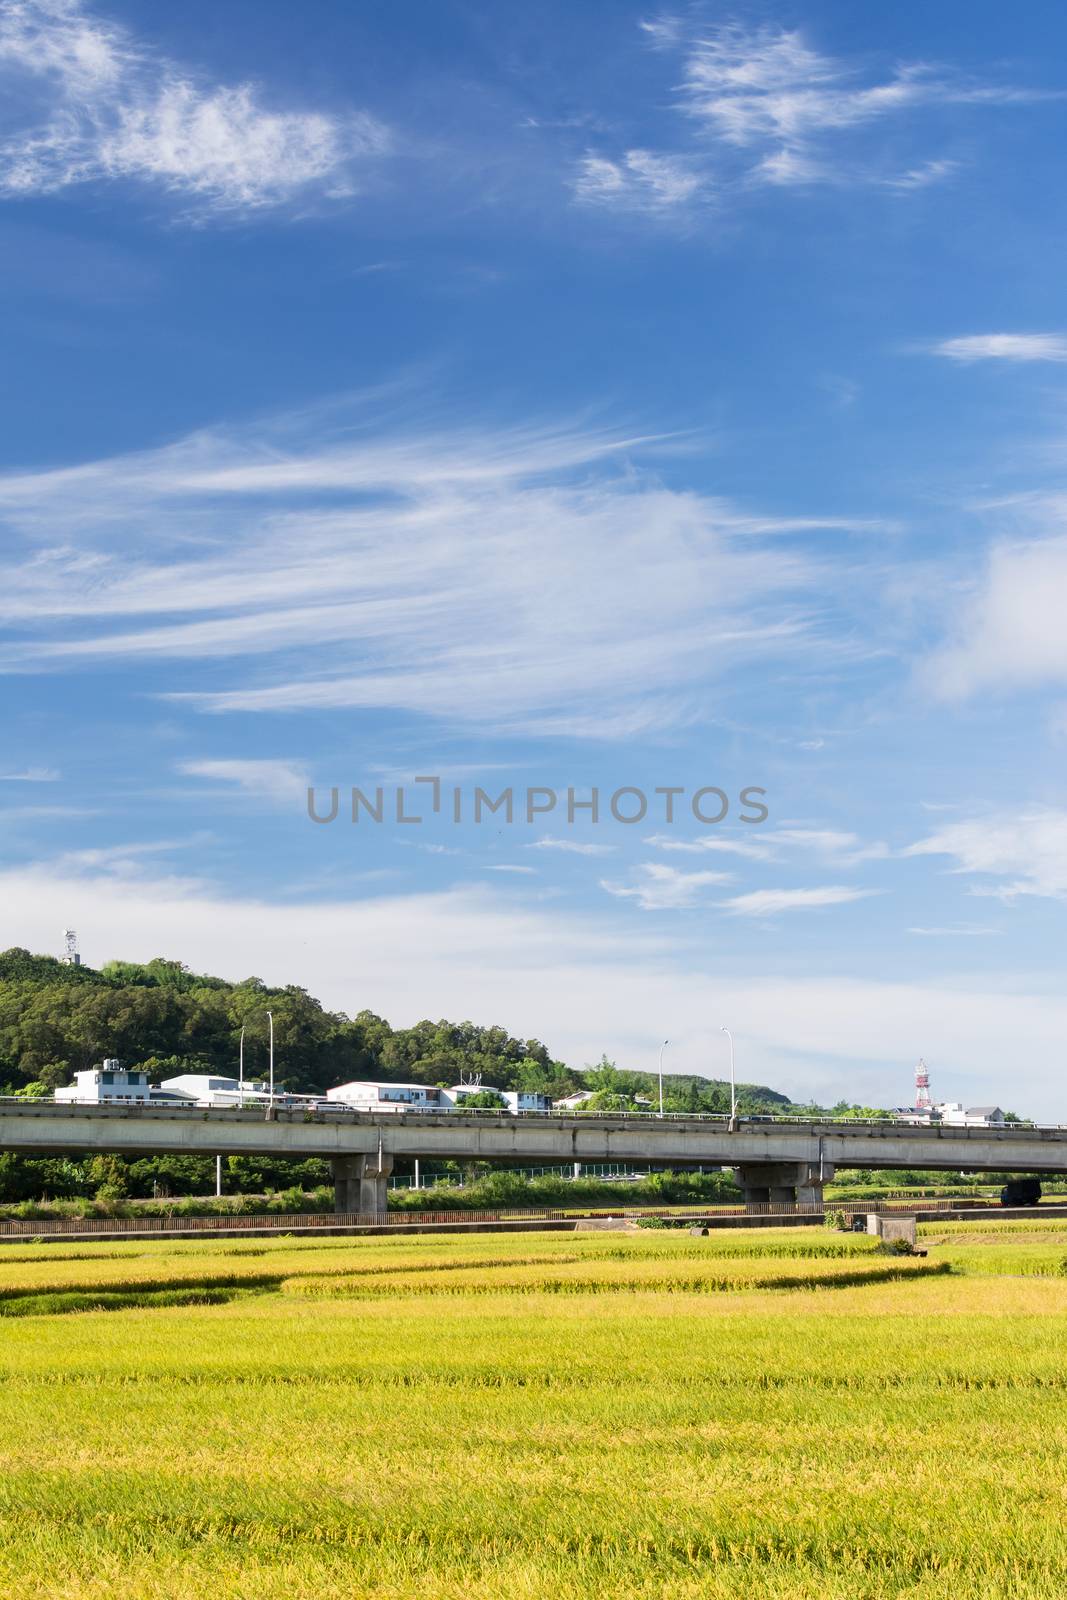 Landscape of paddy farm under blue sky in Hualien, Taiwan, Asia.